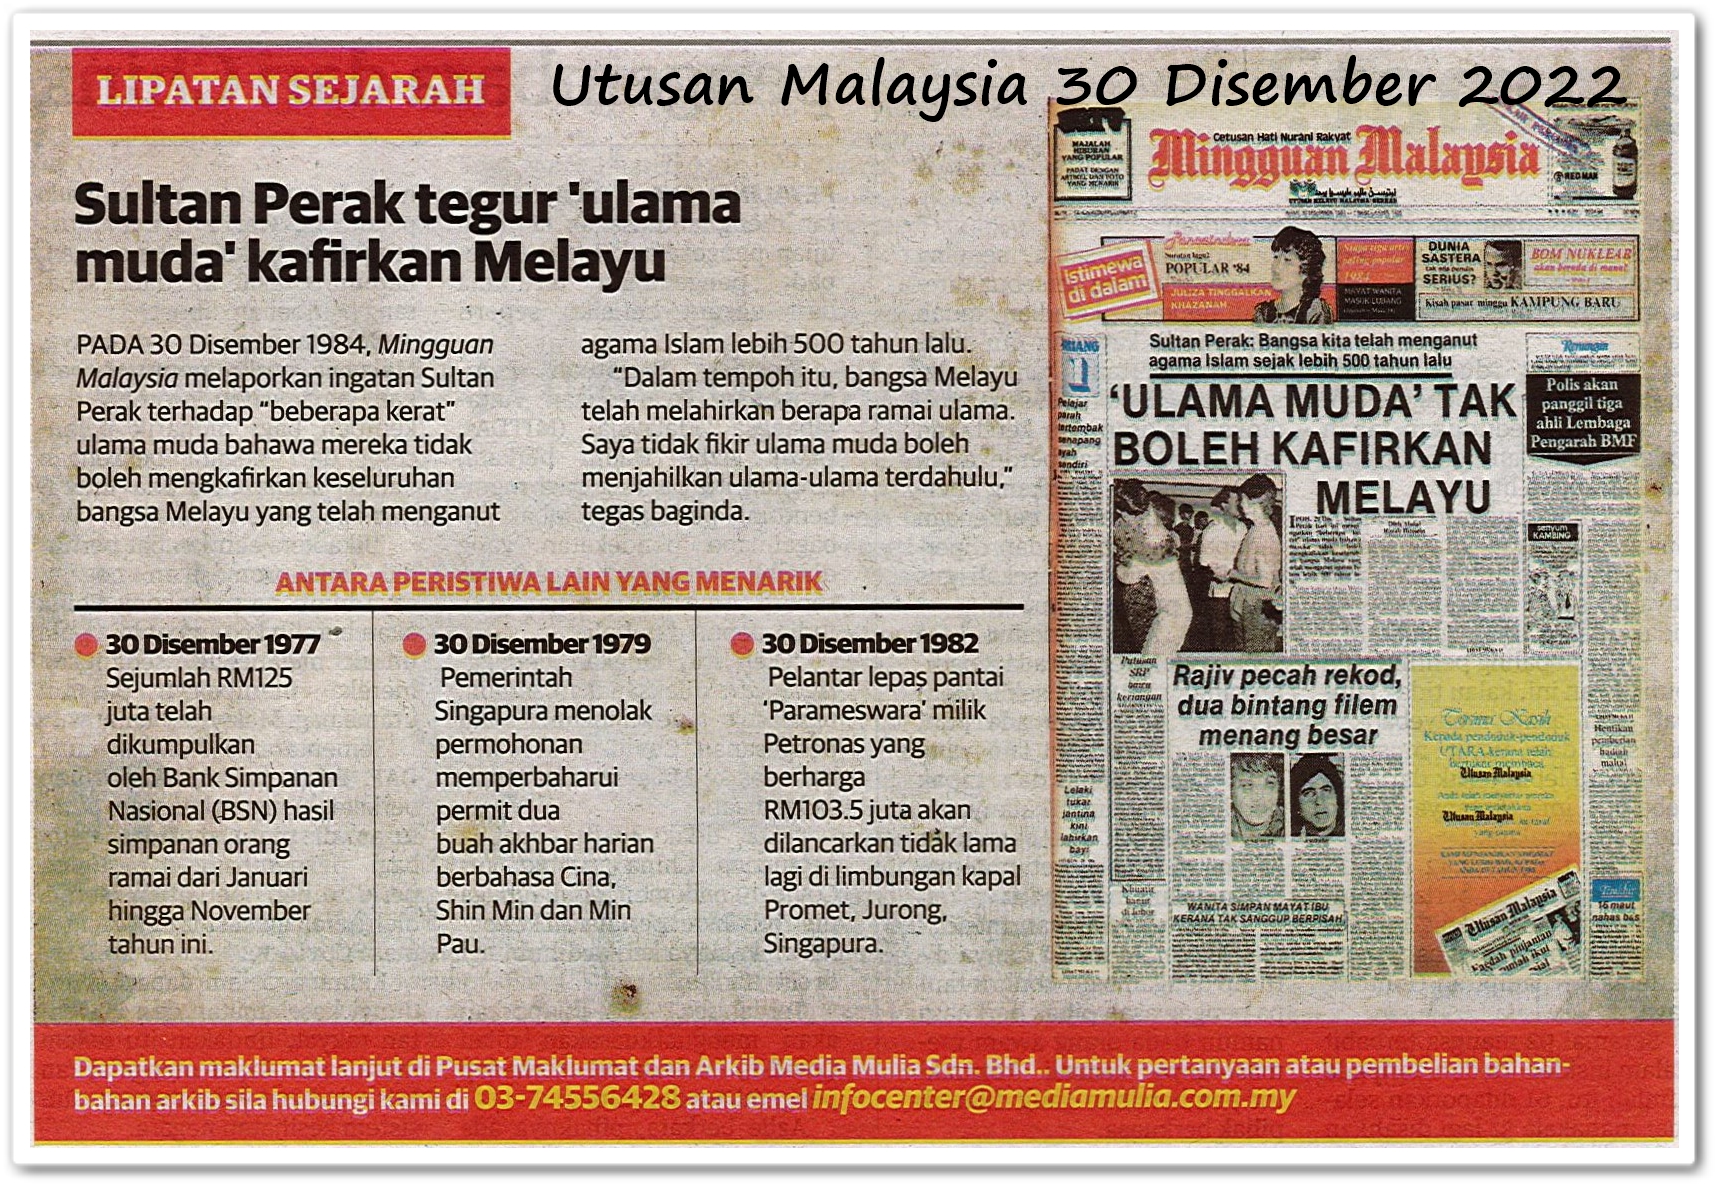 Lipatan sejarah 30 Disember - Keratan akhbar Utusan Malaysia 30 Disember 2022